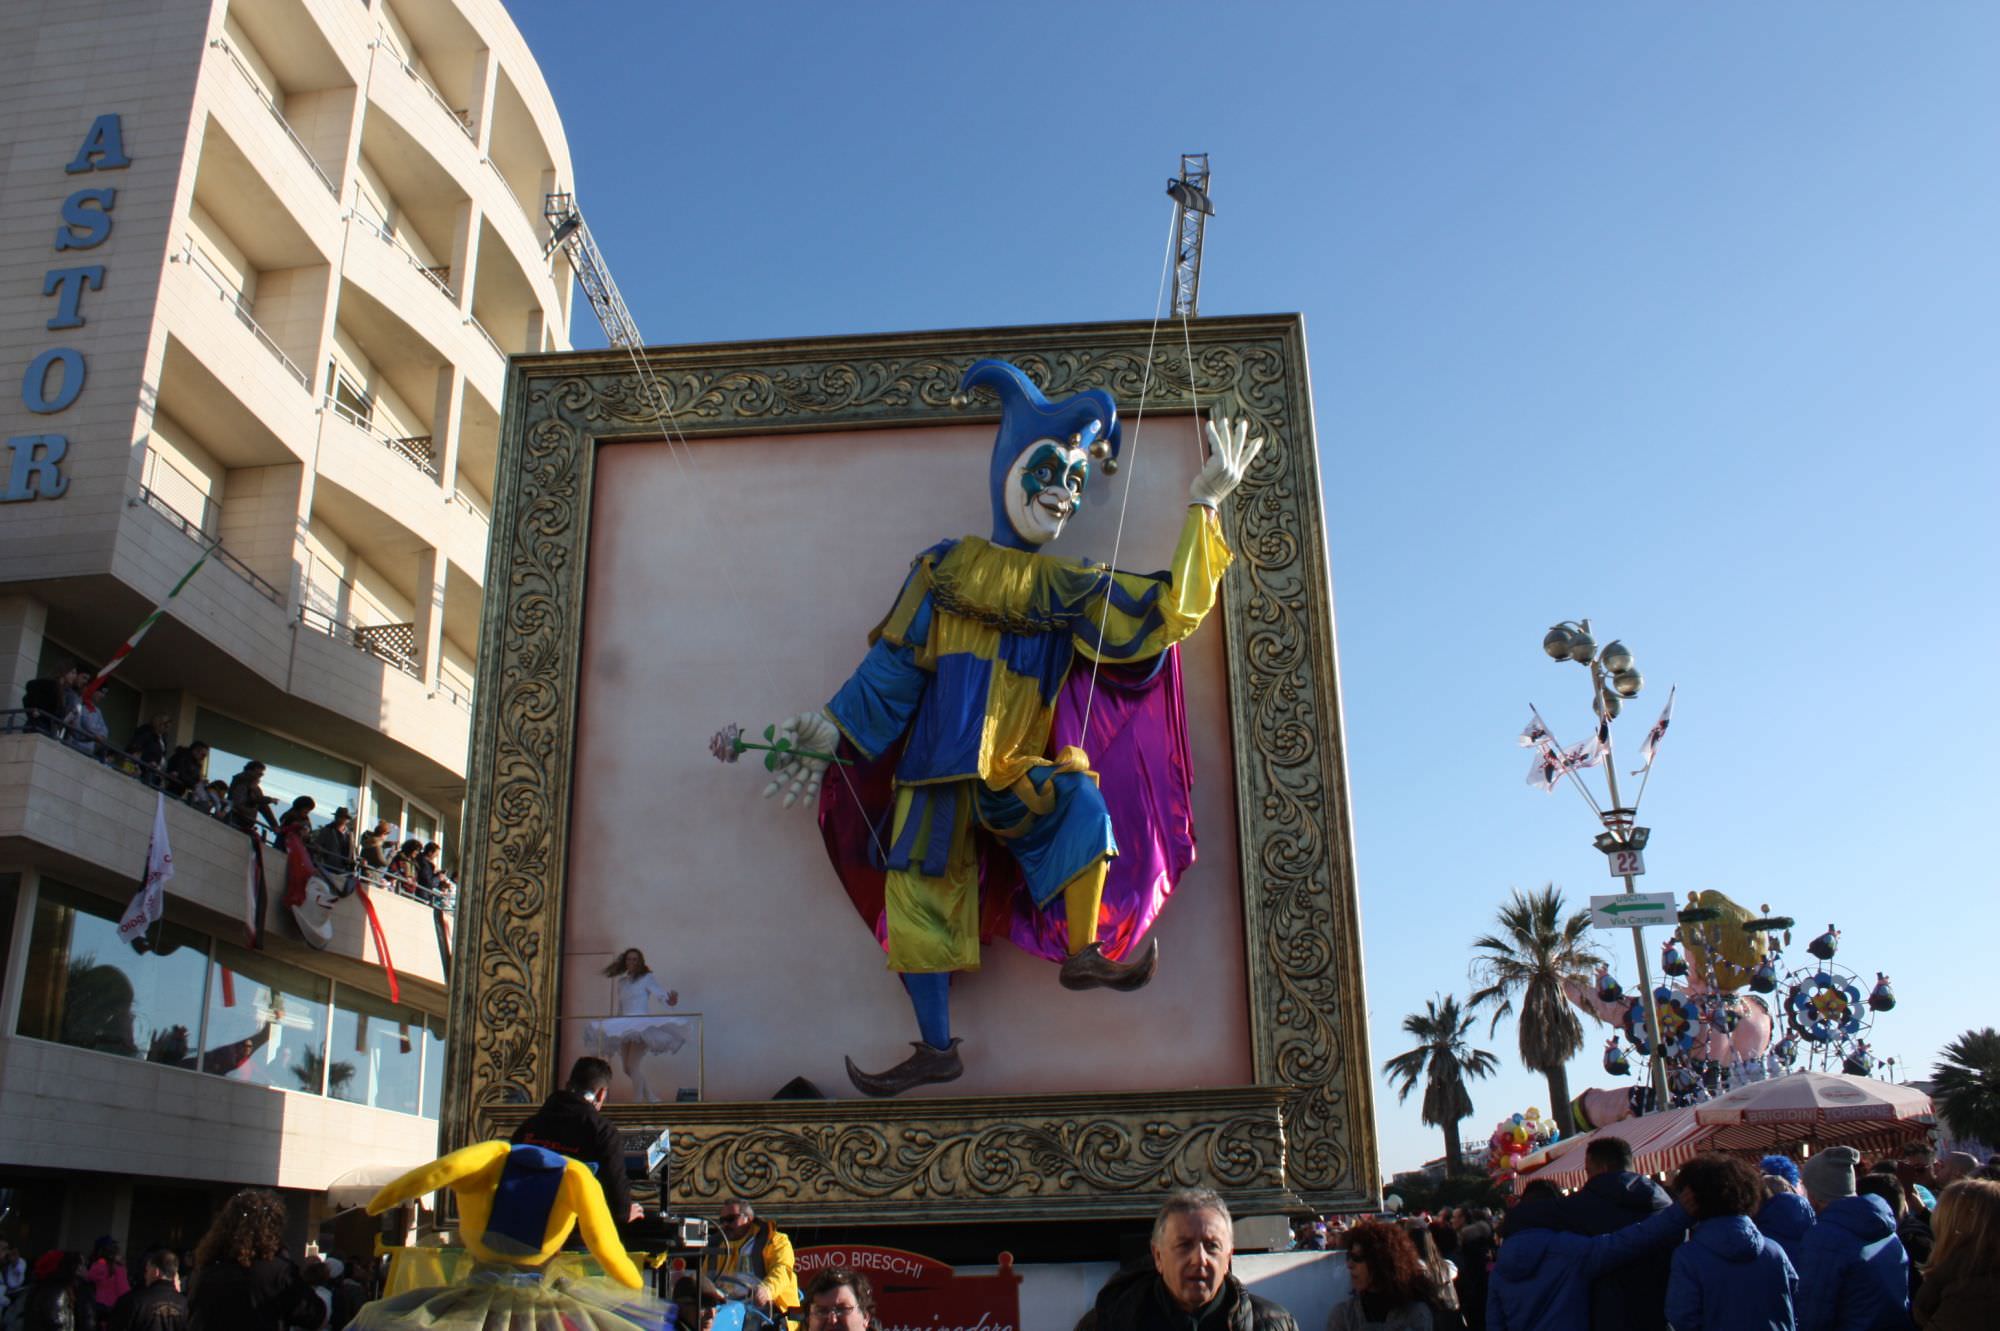 Il Carnevale insegue 740mila euro d’incassi. Polemica Pozzoli-Pasquinucci sui conti della Fondazione